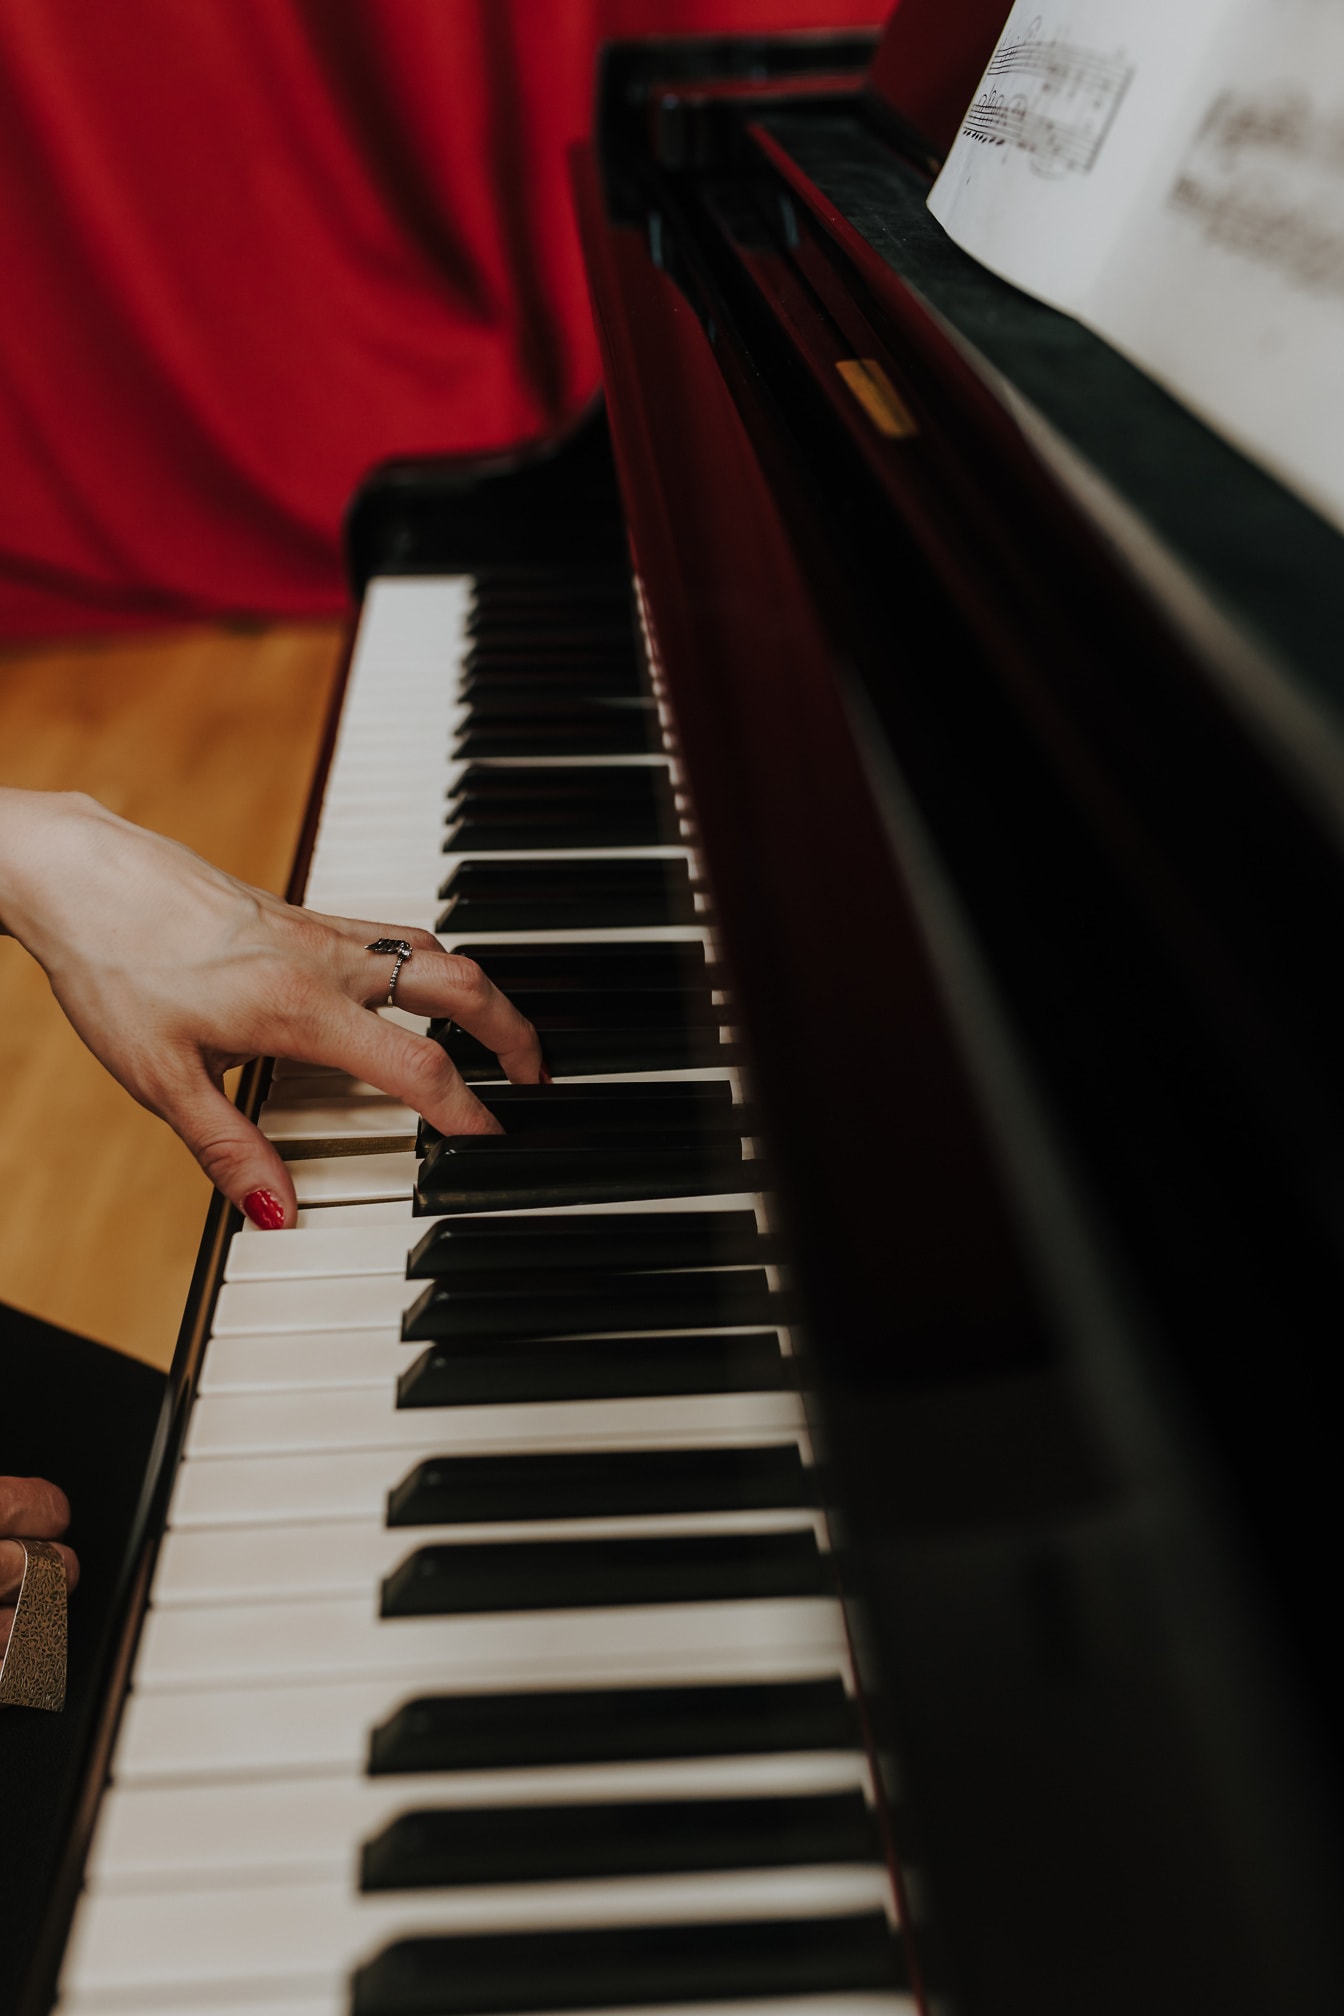 Крупный план руки с золотым кольцом и красным лаком для ногтей, играющей на пианино